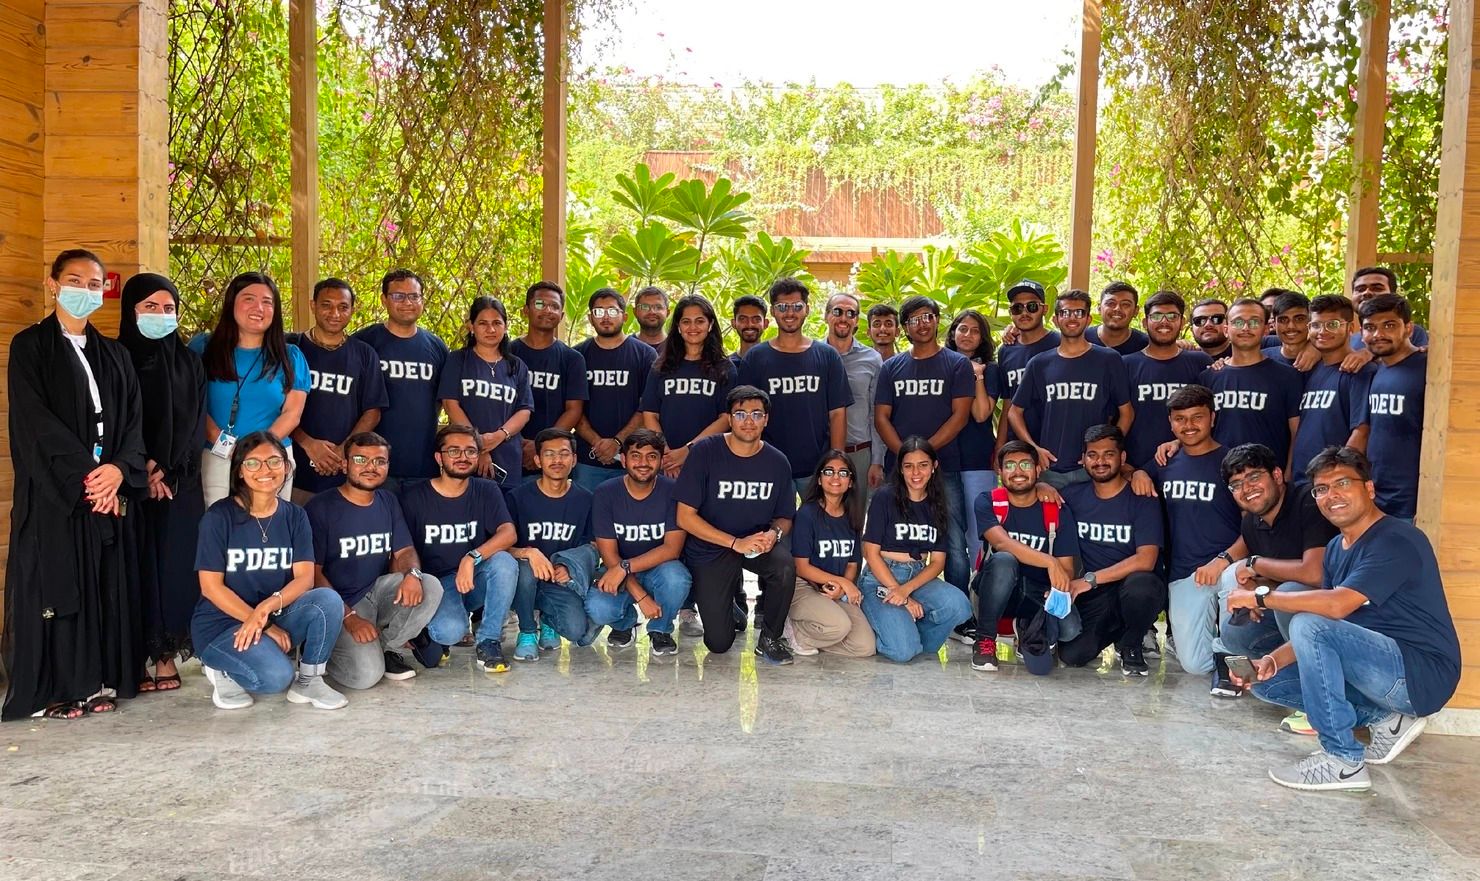 Chuyến tham quan uSky hấp dẫn dành cho sinh viên kỹ thuật từ trường đại học Ấn Độ